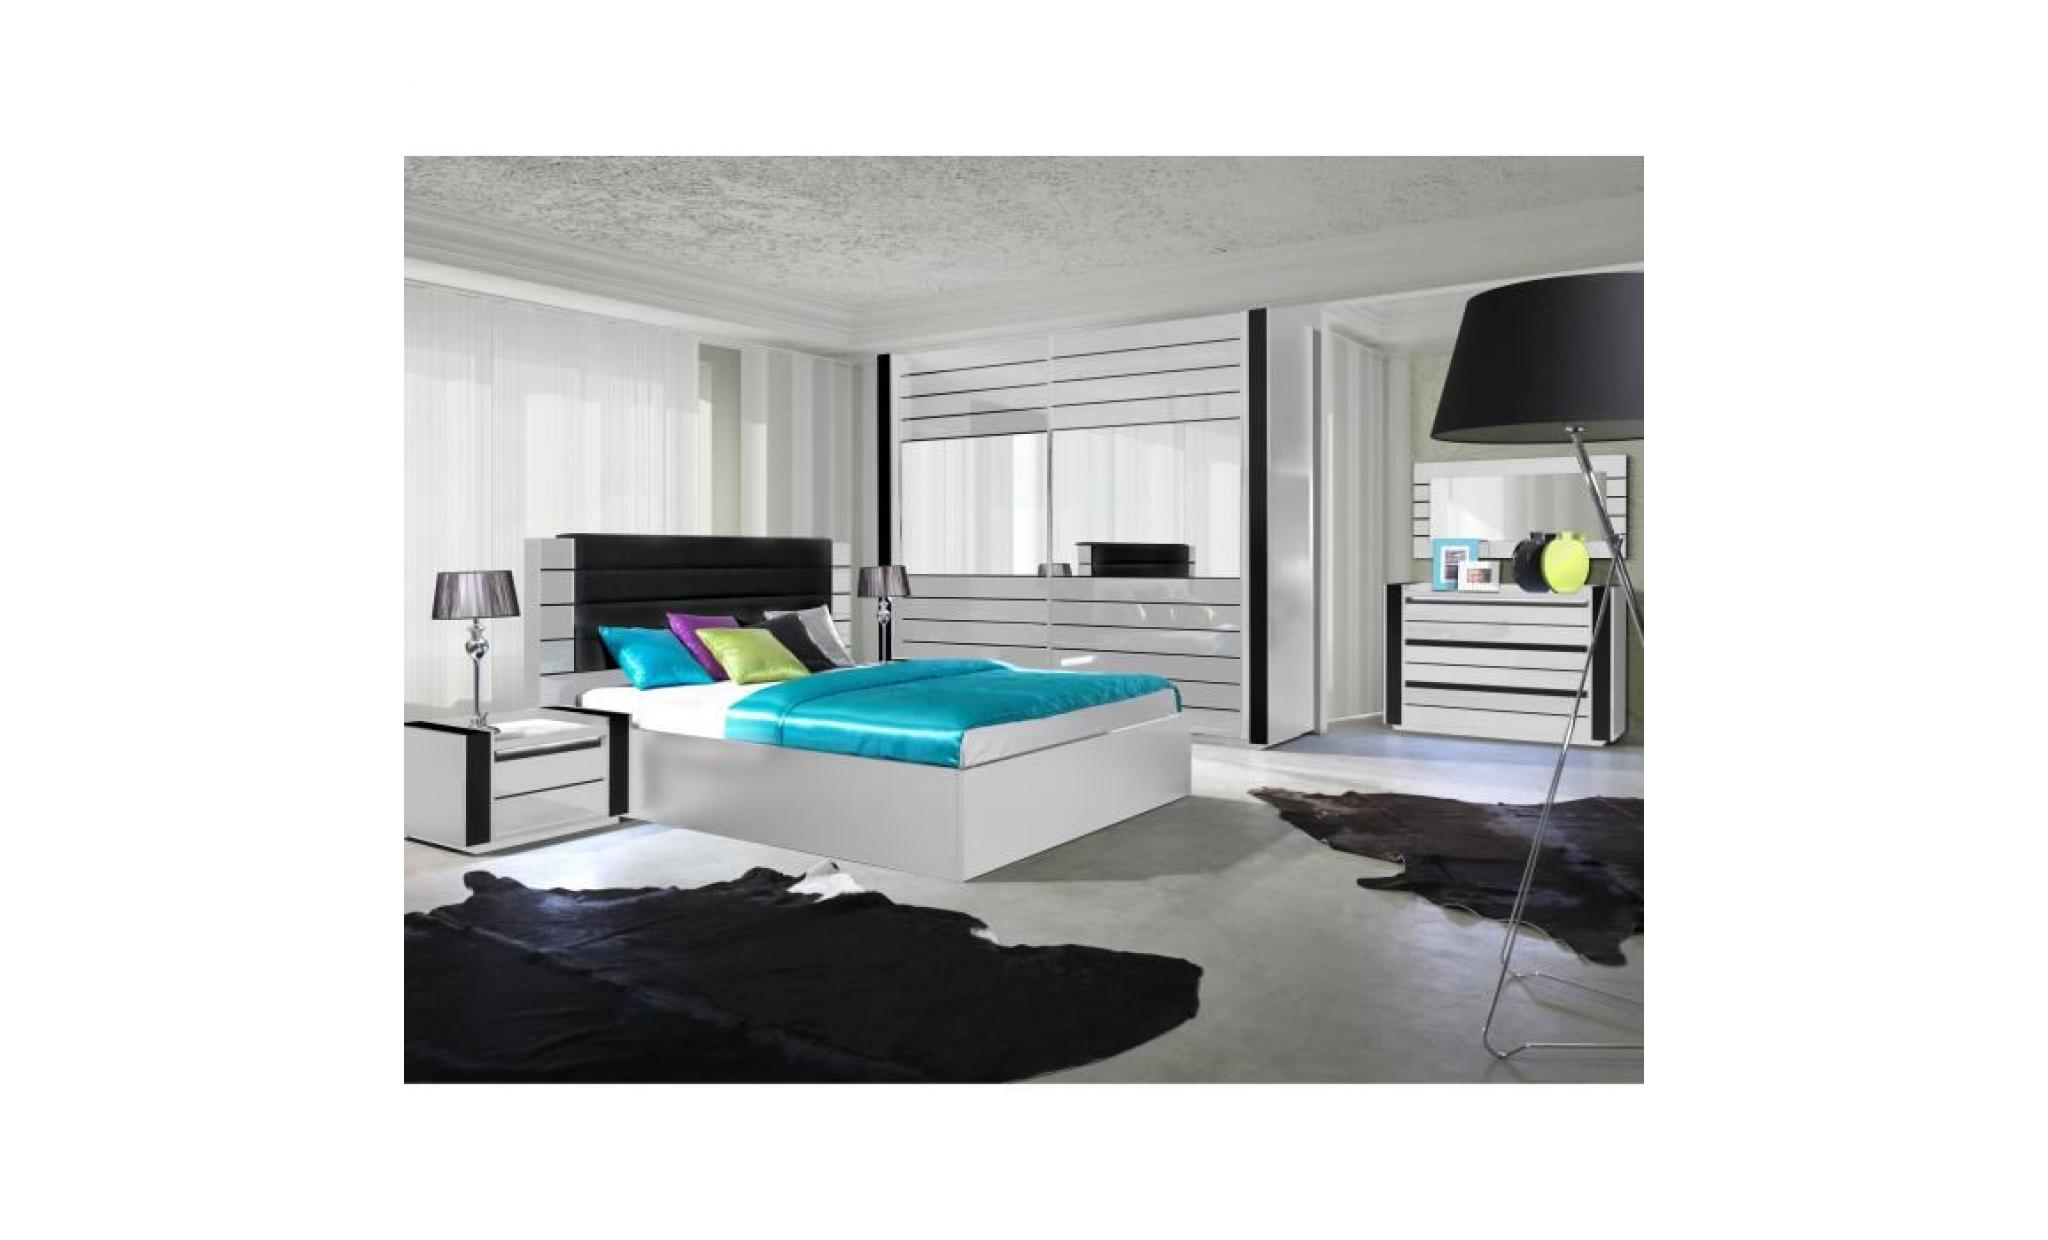 Chambre à coucher complète LINA blanche et noire laquée. Meuble design et tendance